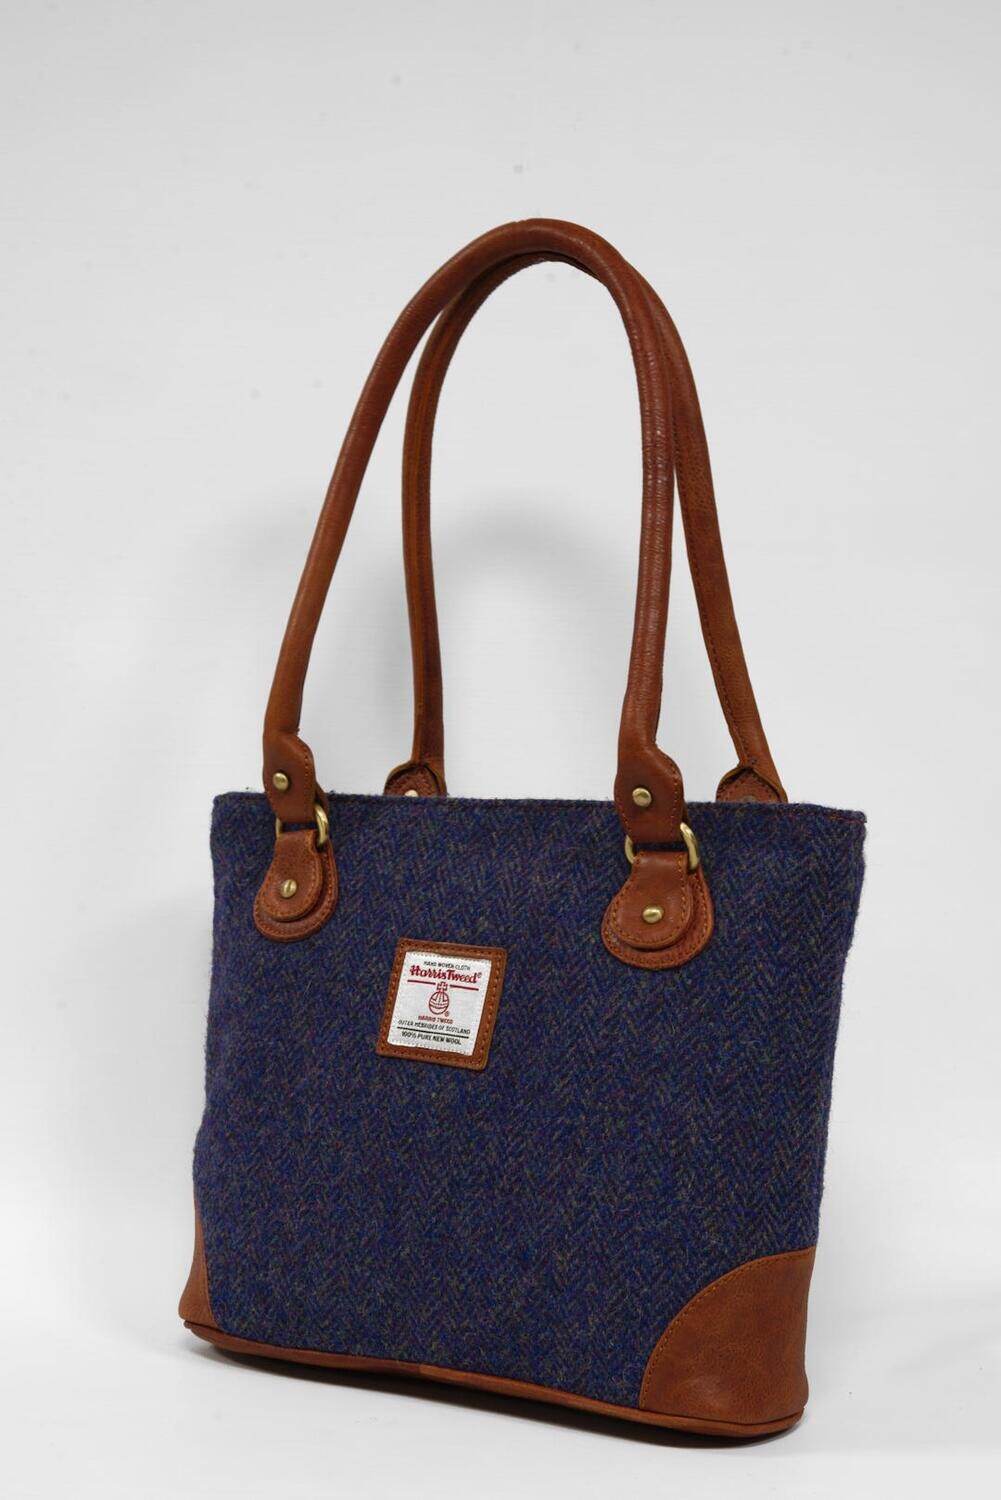 Harris Tweed Tote Bag Style 2 | HB116 (Tan Leather)